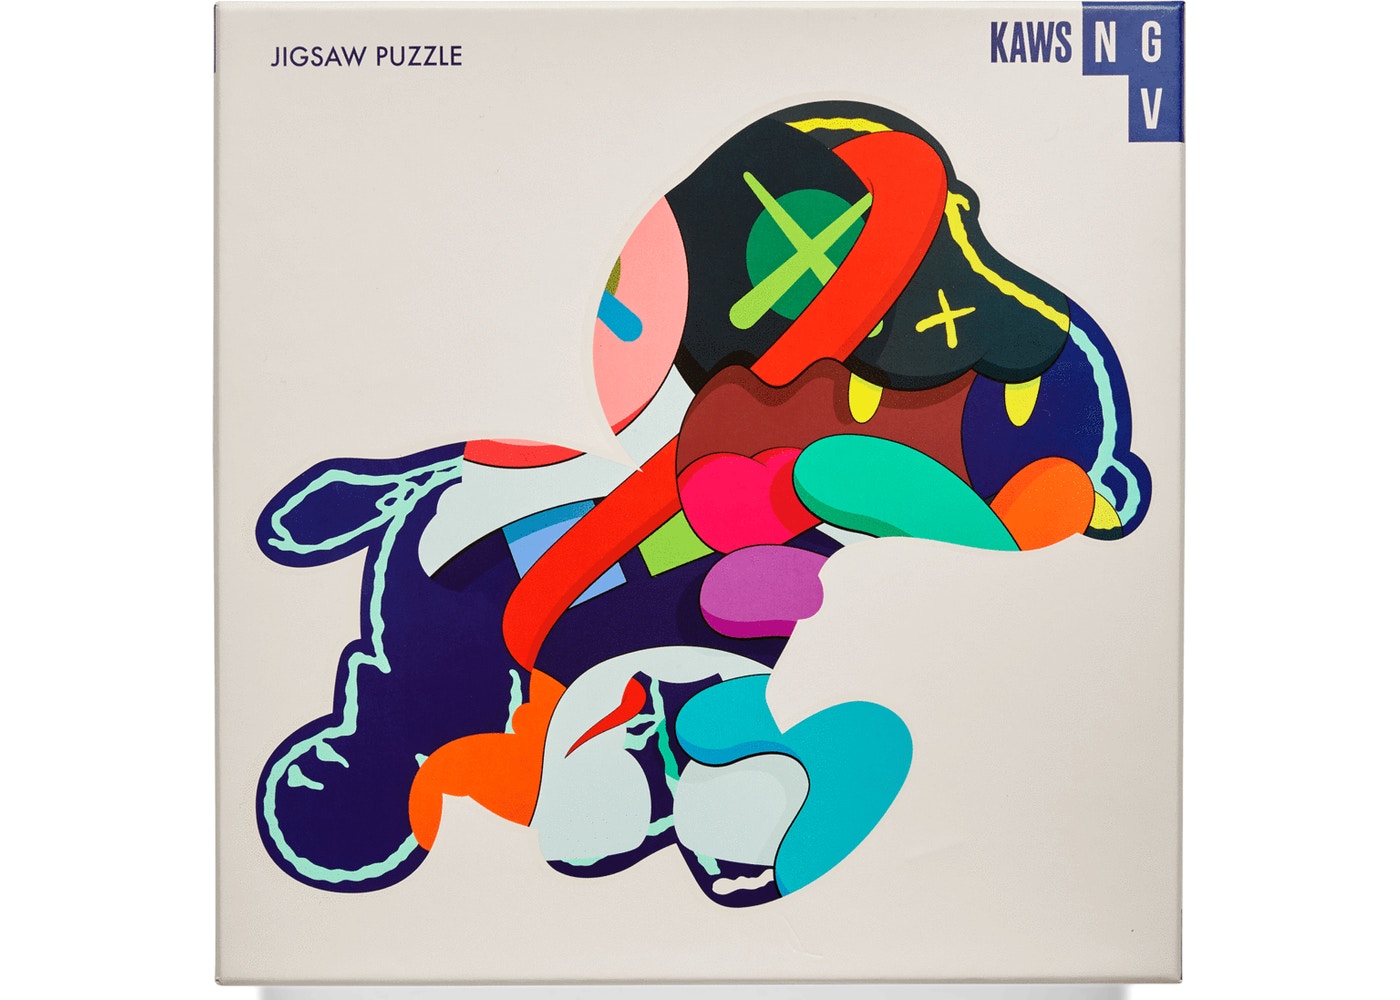 KAWS x NGV "Stay Steady" 1000 Piece Jigsaw Puzzle, 2019